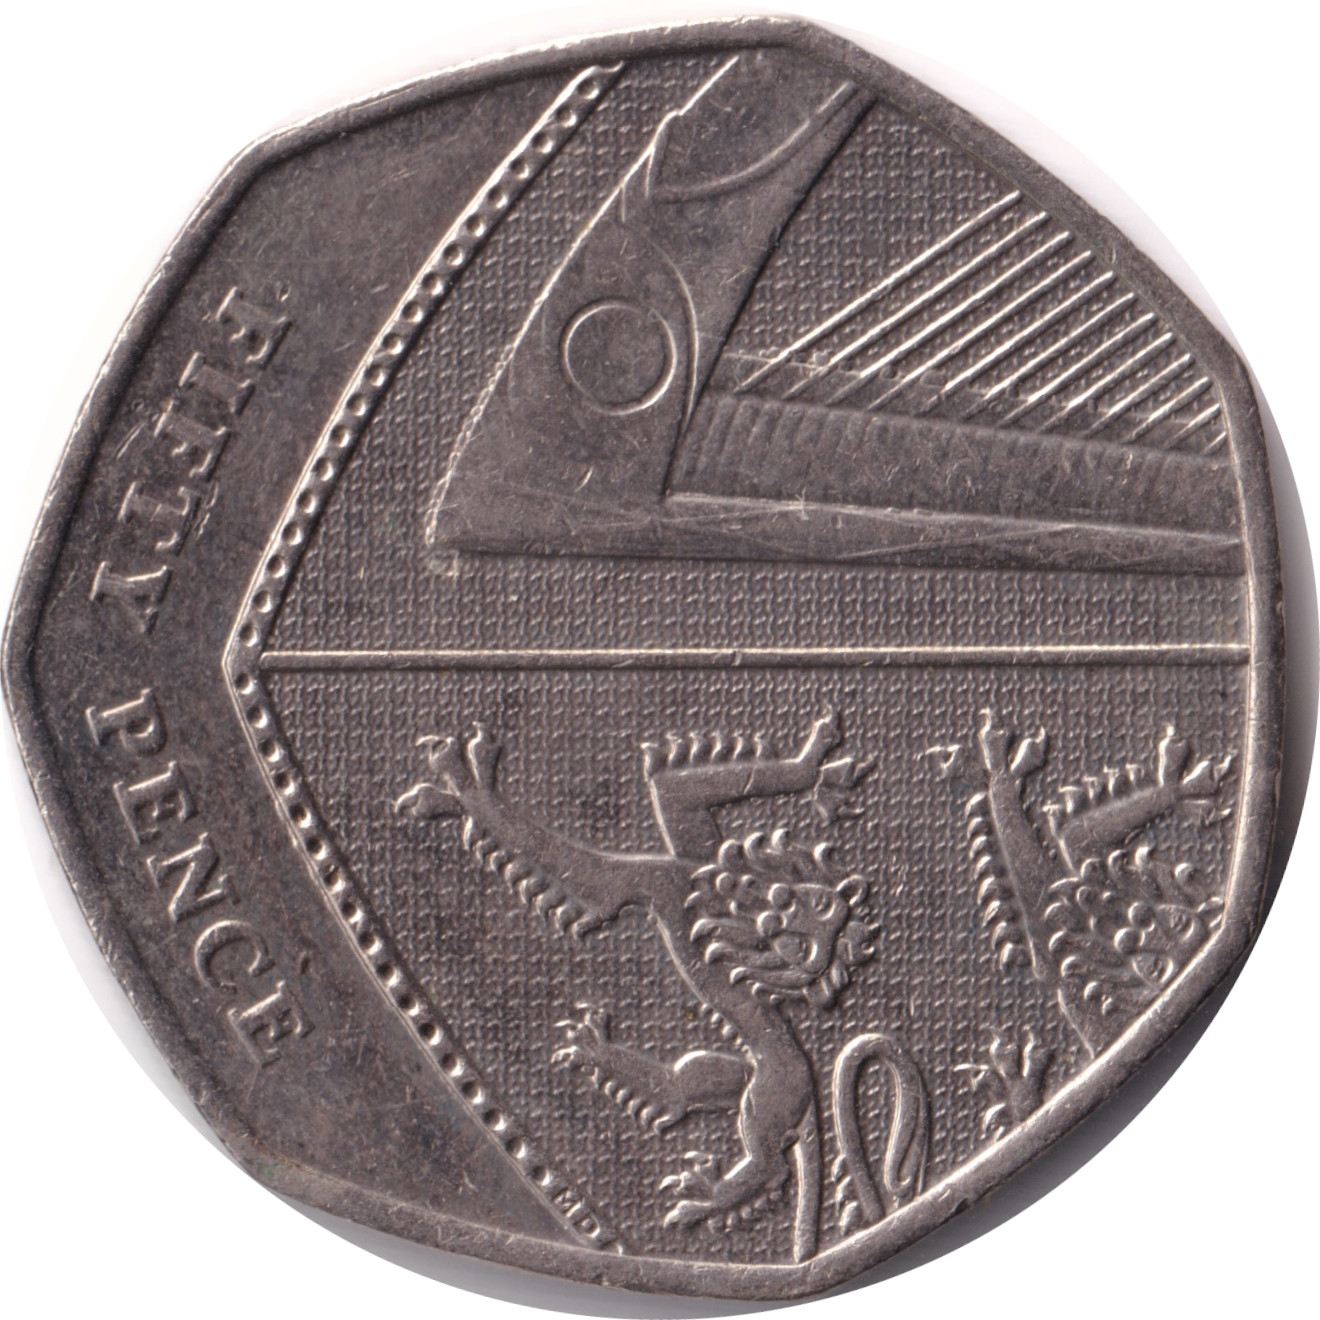 50 pence - Elizabeth II - Tête agée - Blason